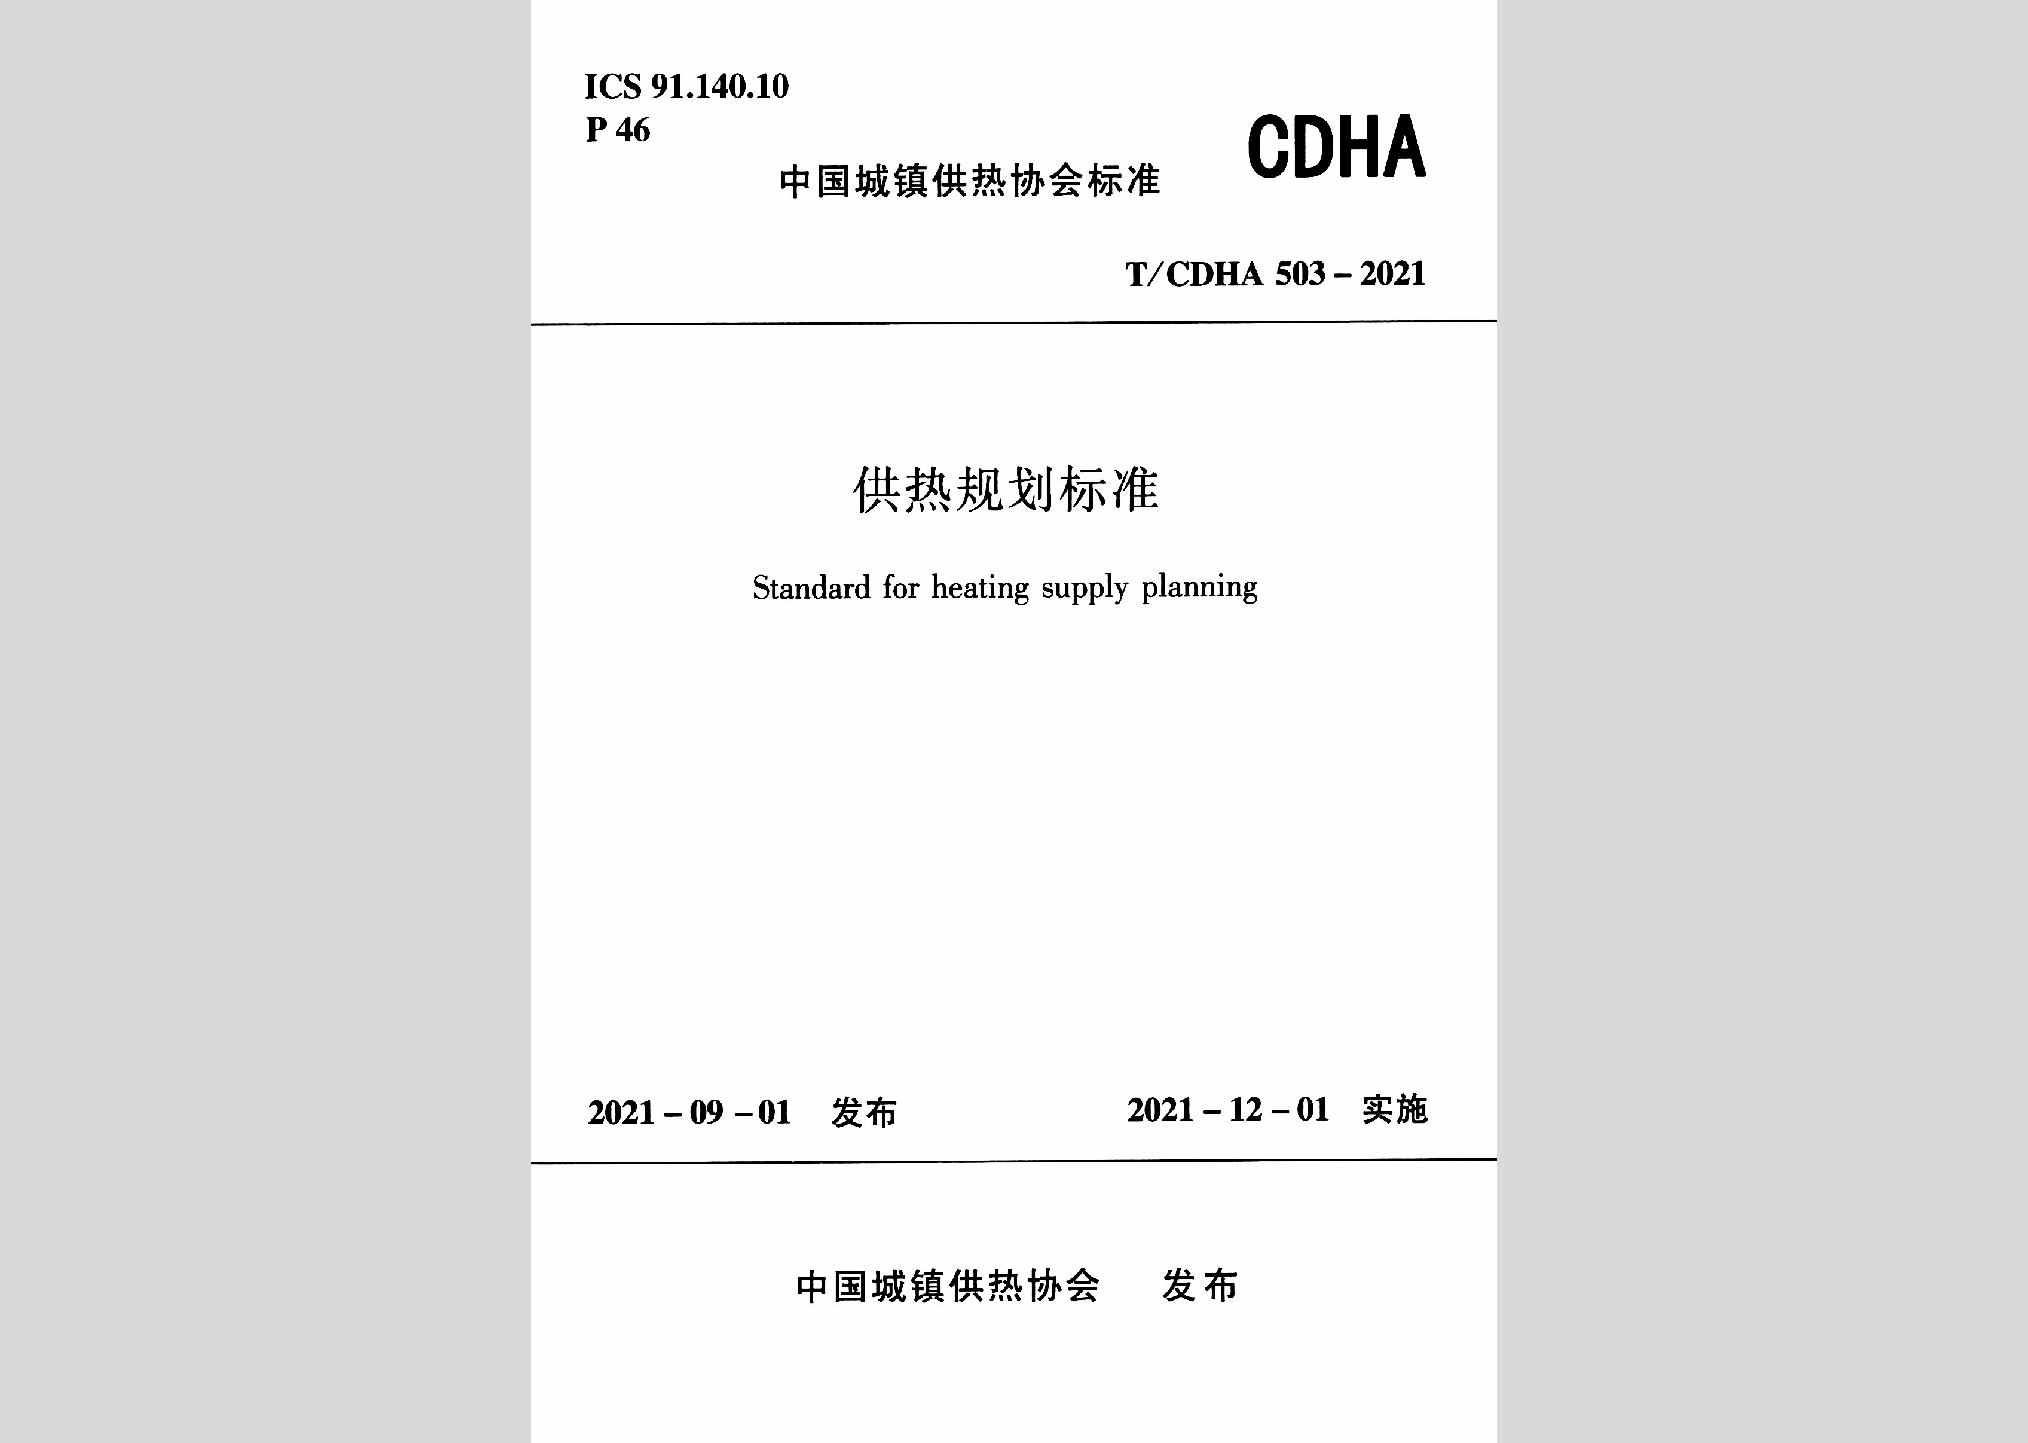 T/CDHA503-2021：供热规划标准